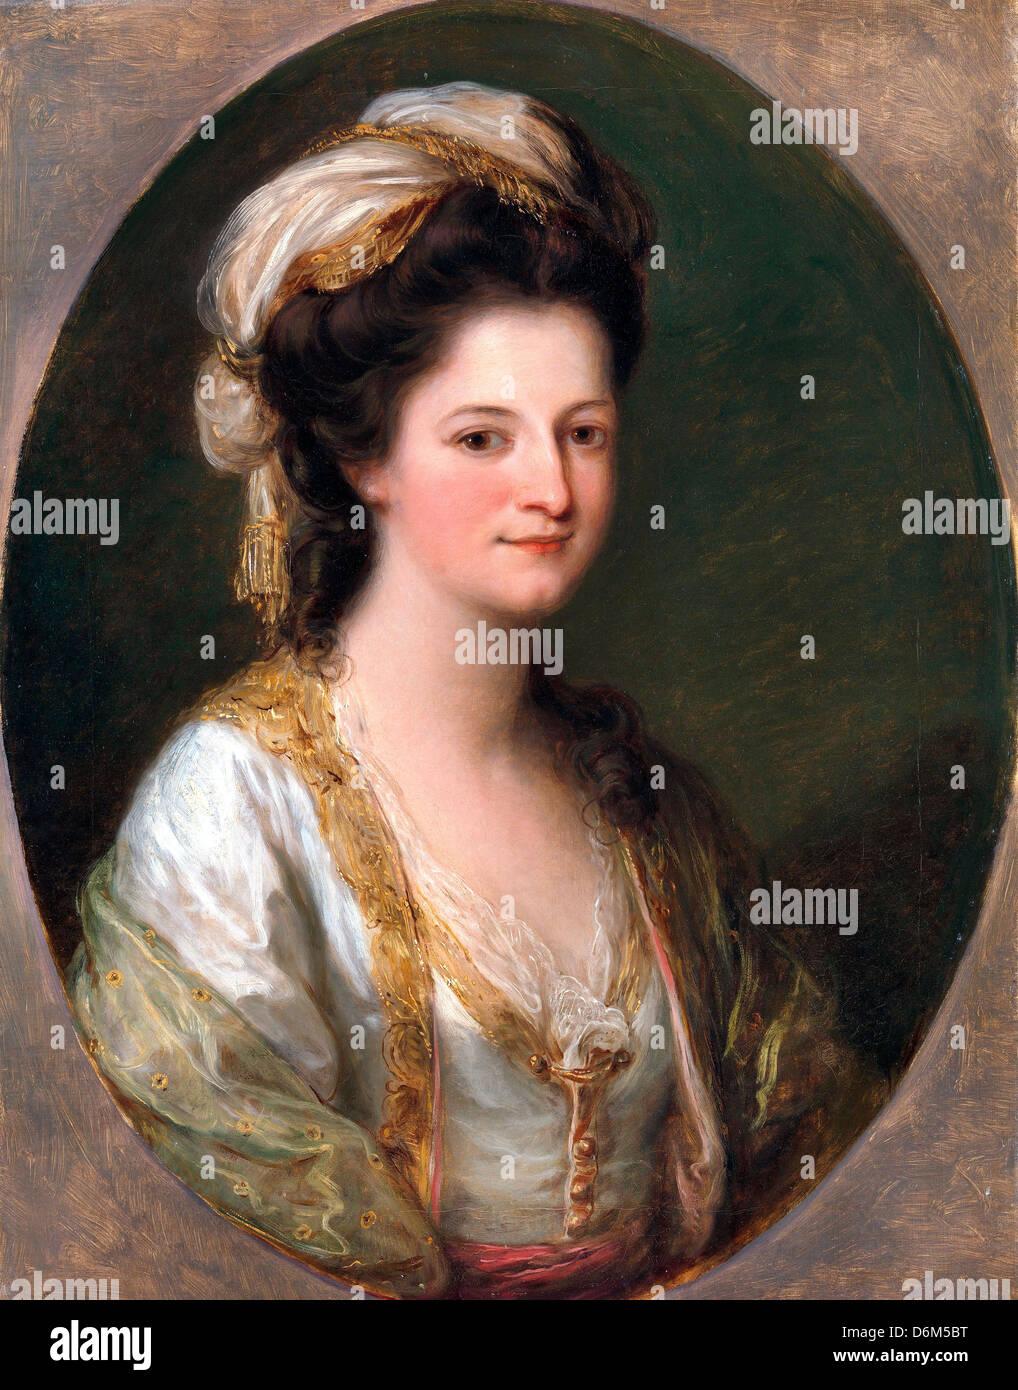 Angelica Kauffman, Ritratto di una donna, tradizionalmente identificata come Lady Hervey. Circa 1770. Olio su tela. Foto Stock